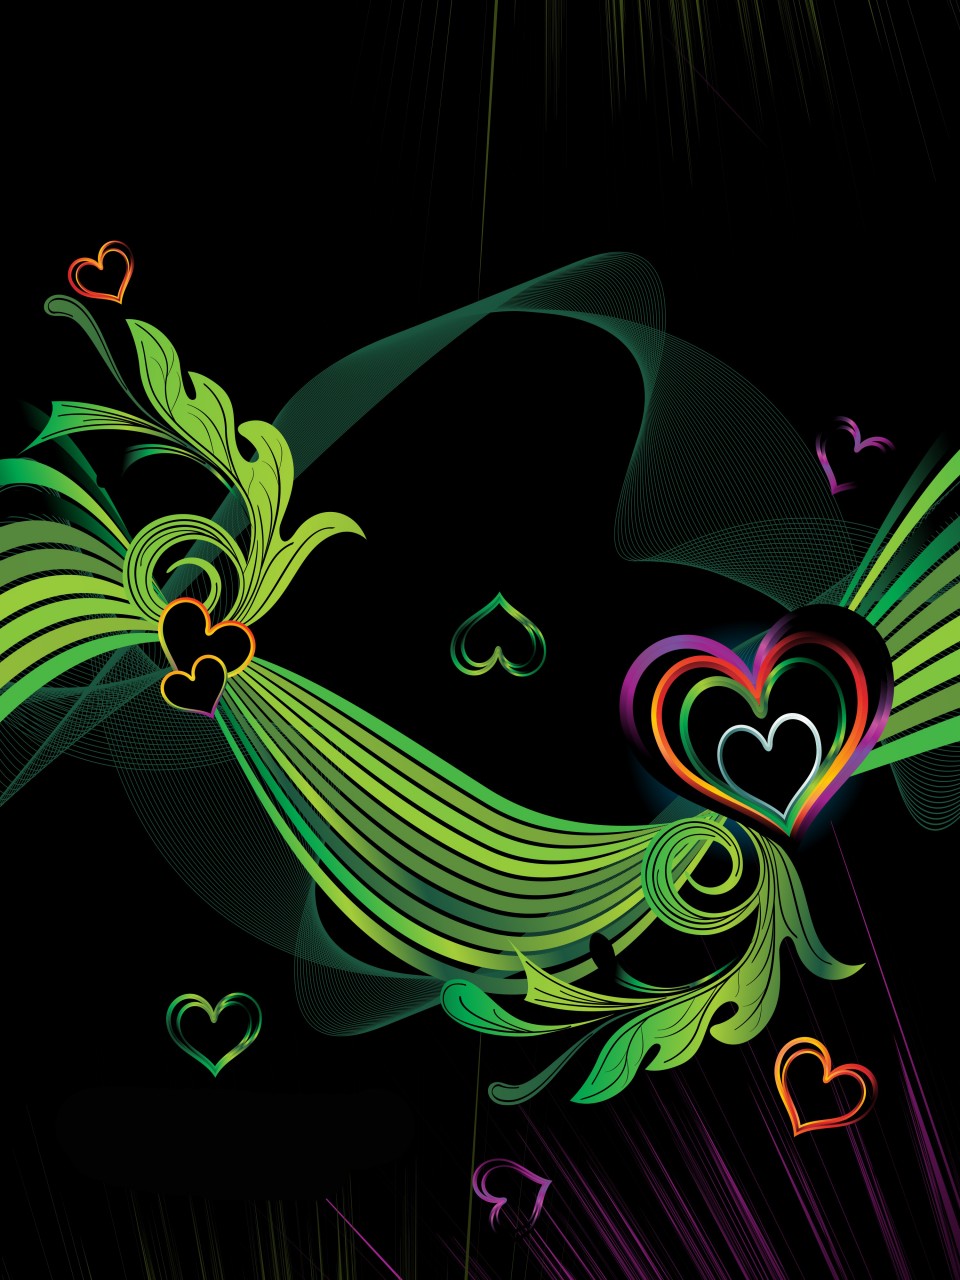 Colorful Hearts On Black Background Elsoar